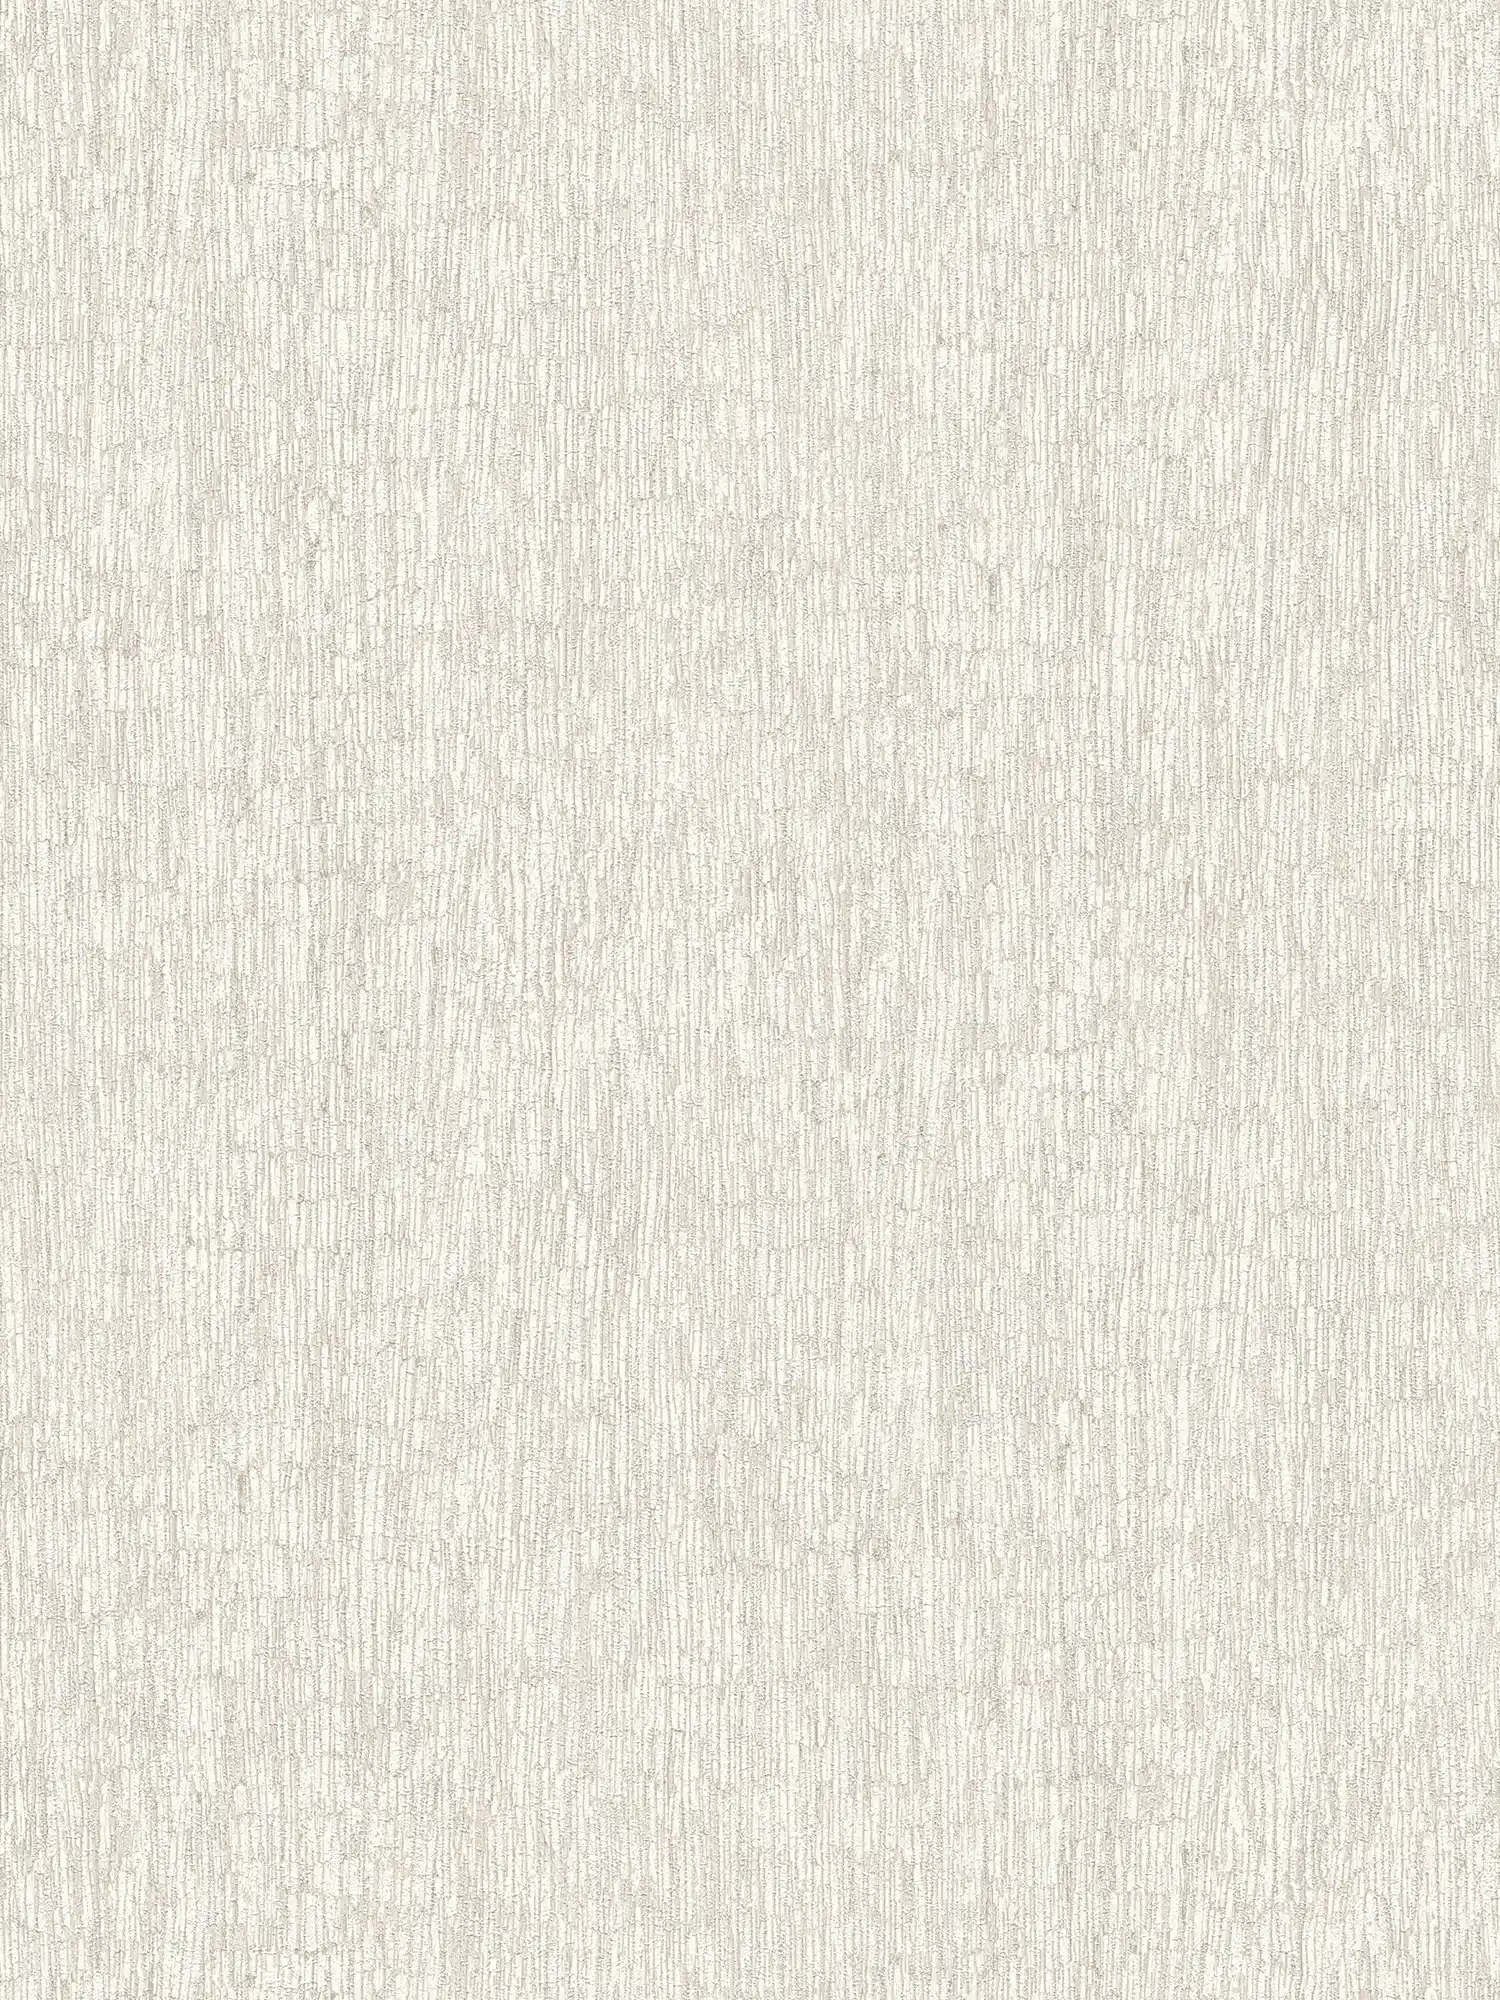 papier peint en papier intissé aspect textile légèrement brillant - blanc, gris, argenté
